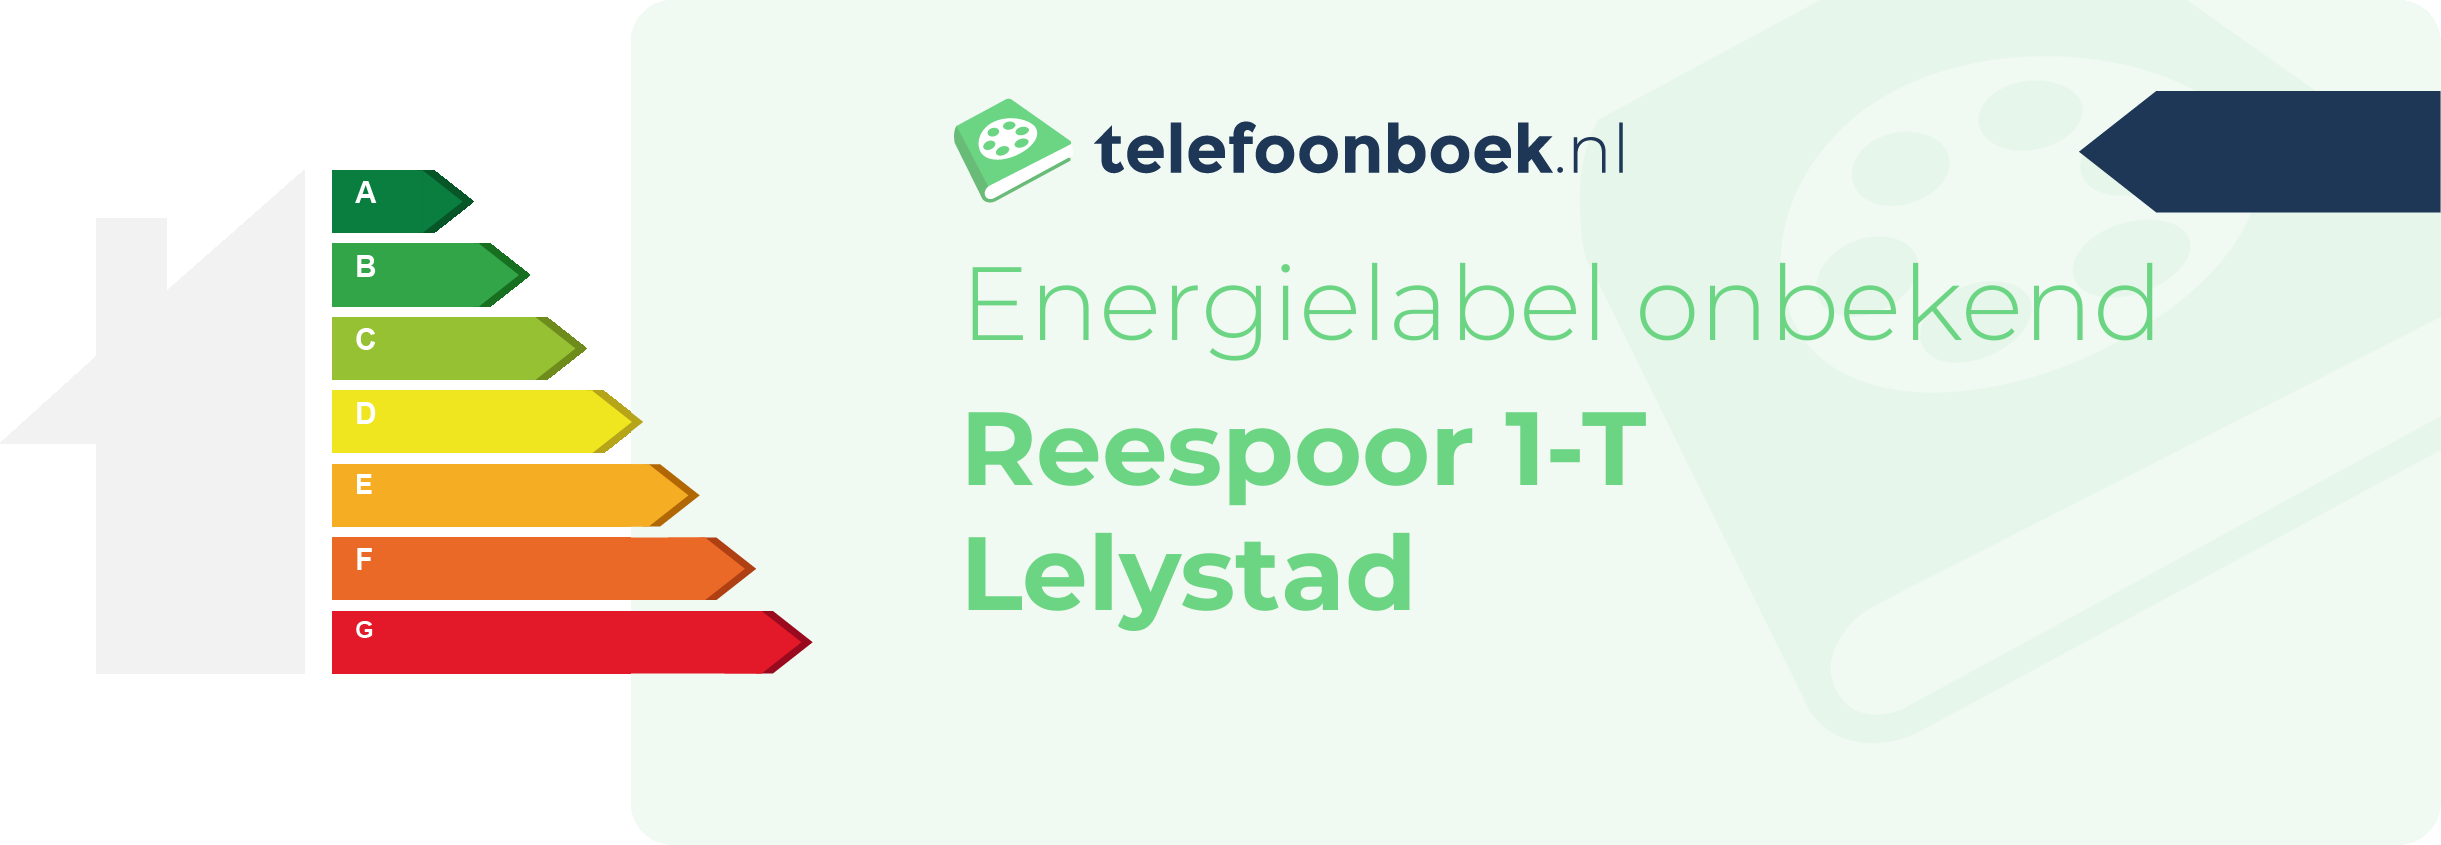 Energielabel Reespoor 1-T Lelystad